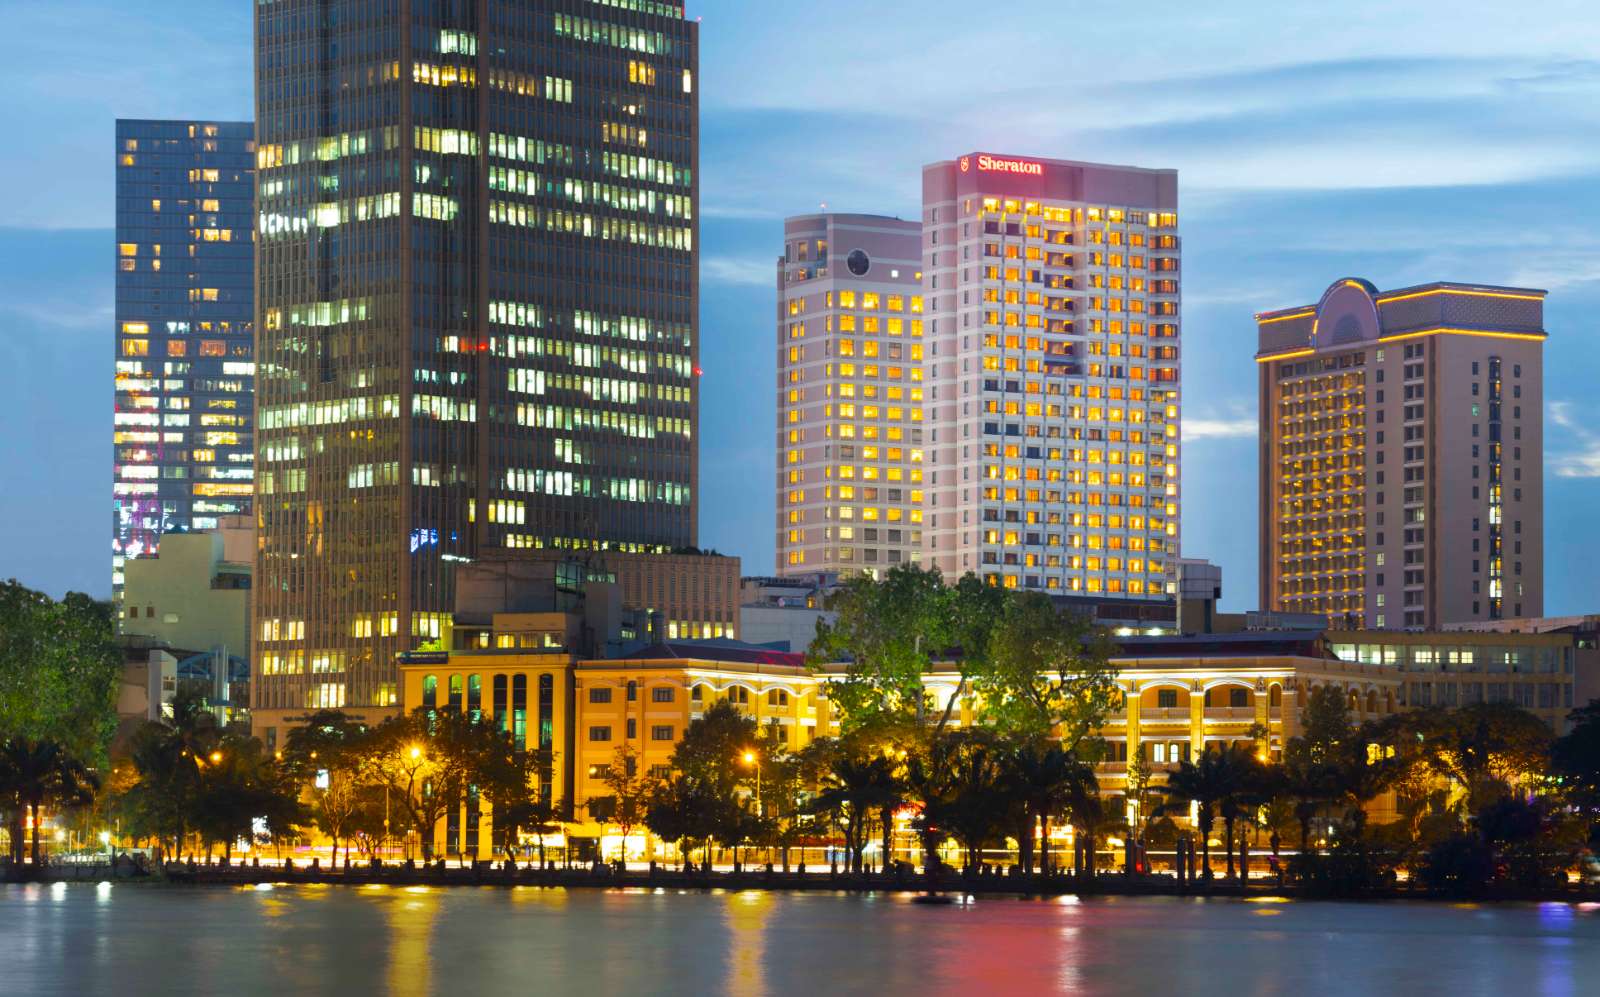 Sheraton Saigon Hotel & Towers, Sheraton, kỉ niệm 20 năm, chương trình ưu đãi